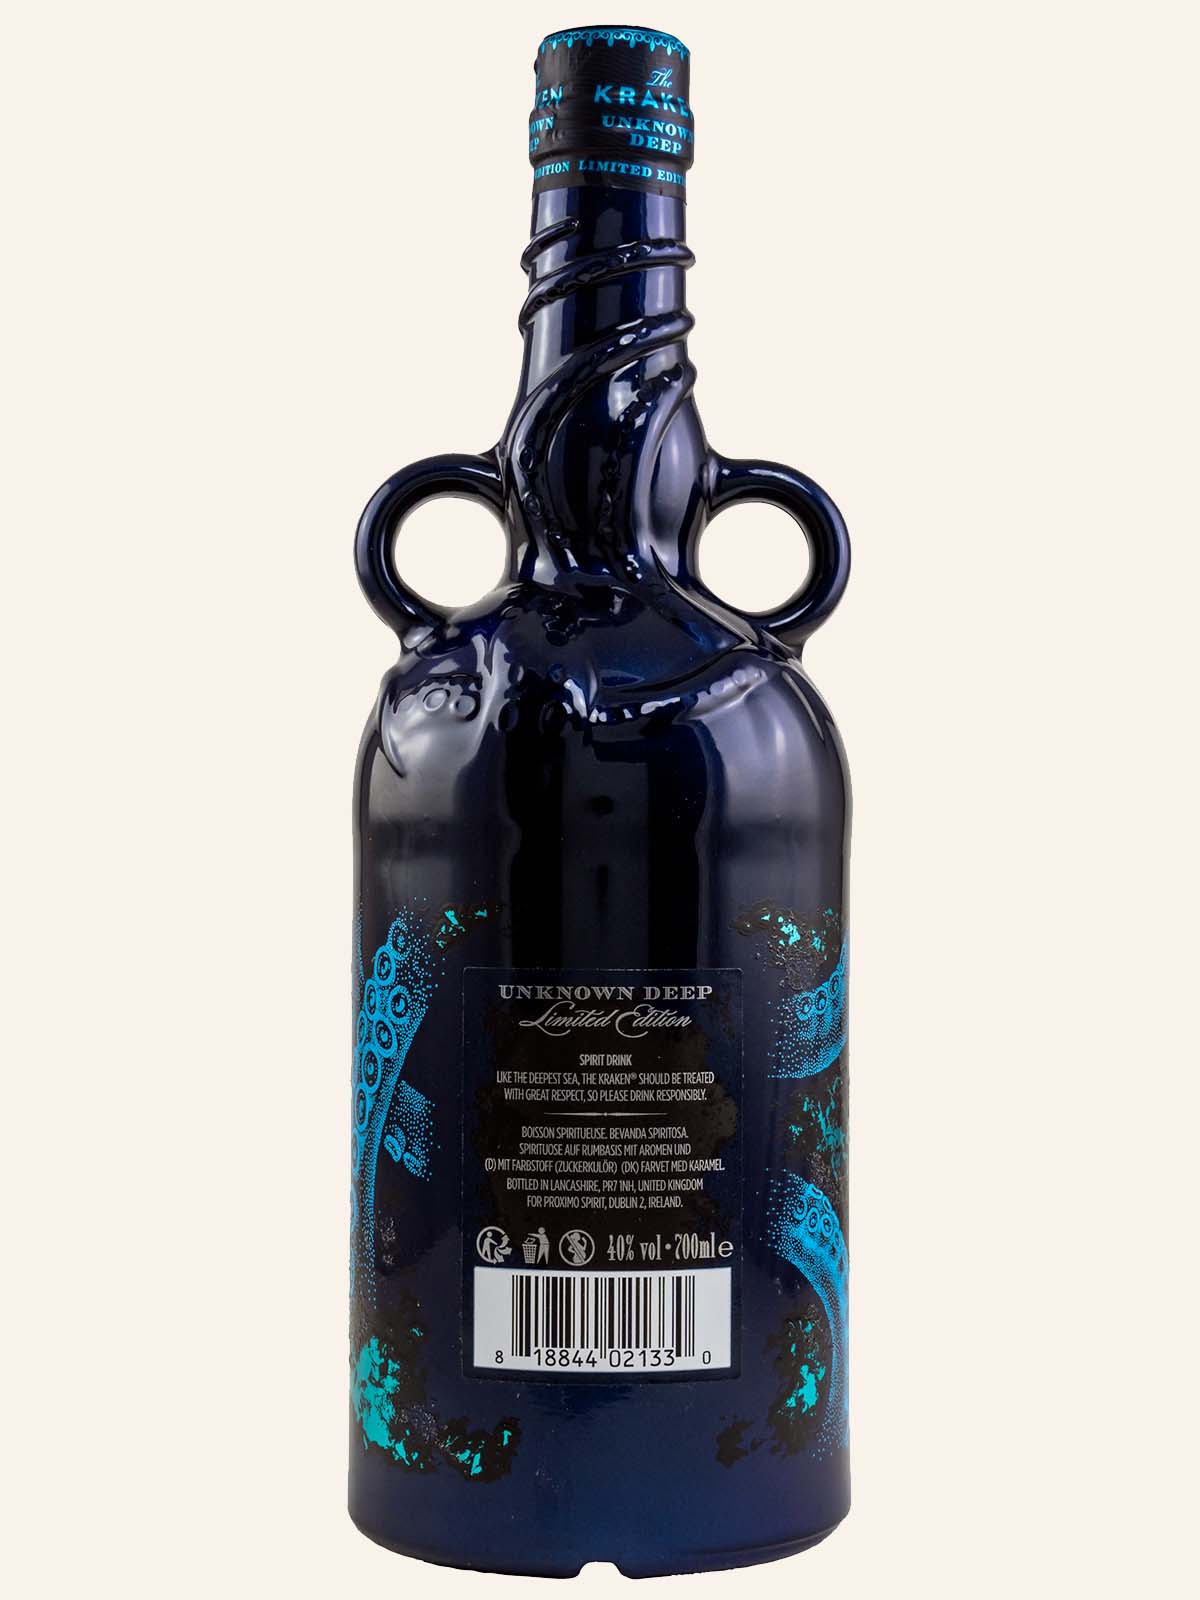 The Kraken Black Spiced Unknown 0,7L | // | Rum | Deep Spirituosen Rum Bundesbrand 40% Vol. 